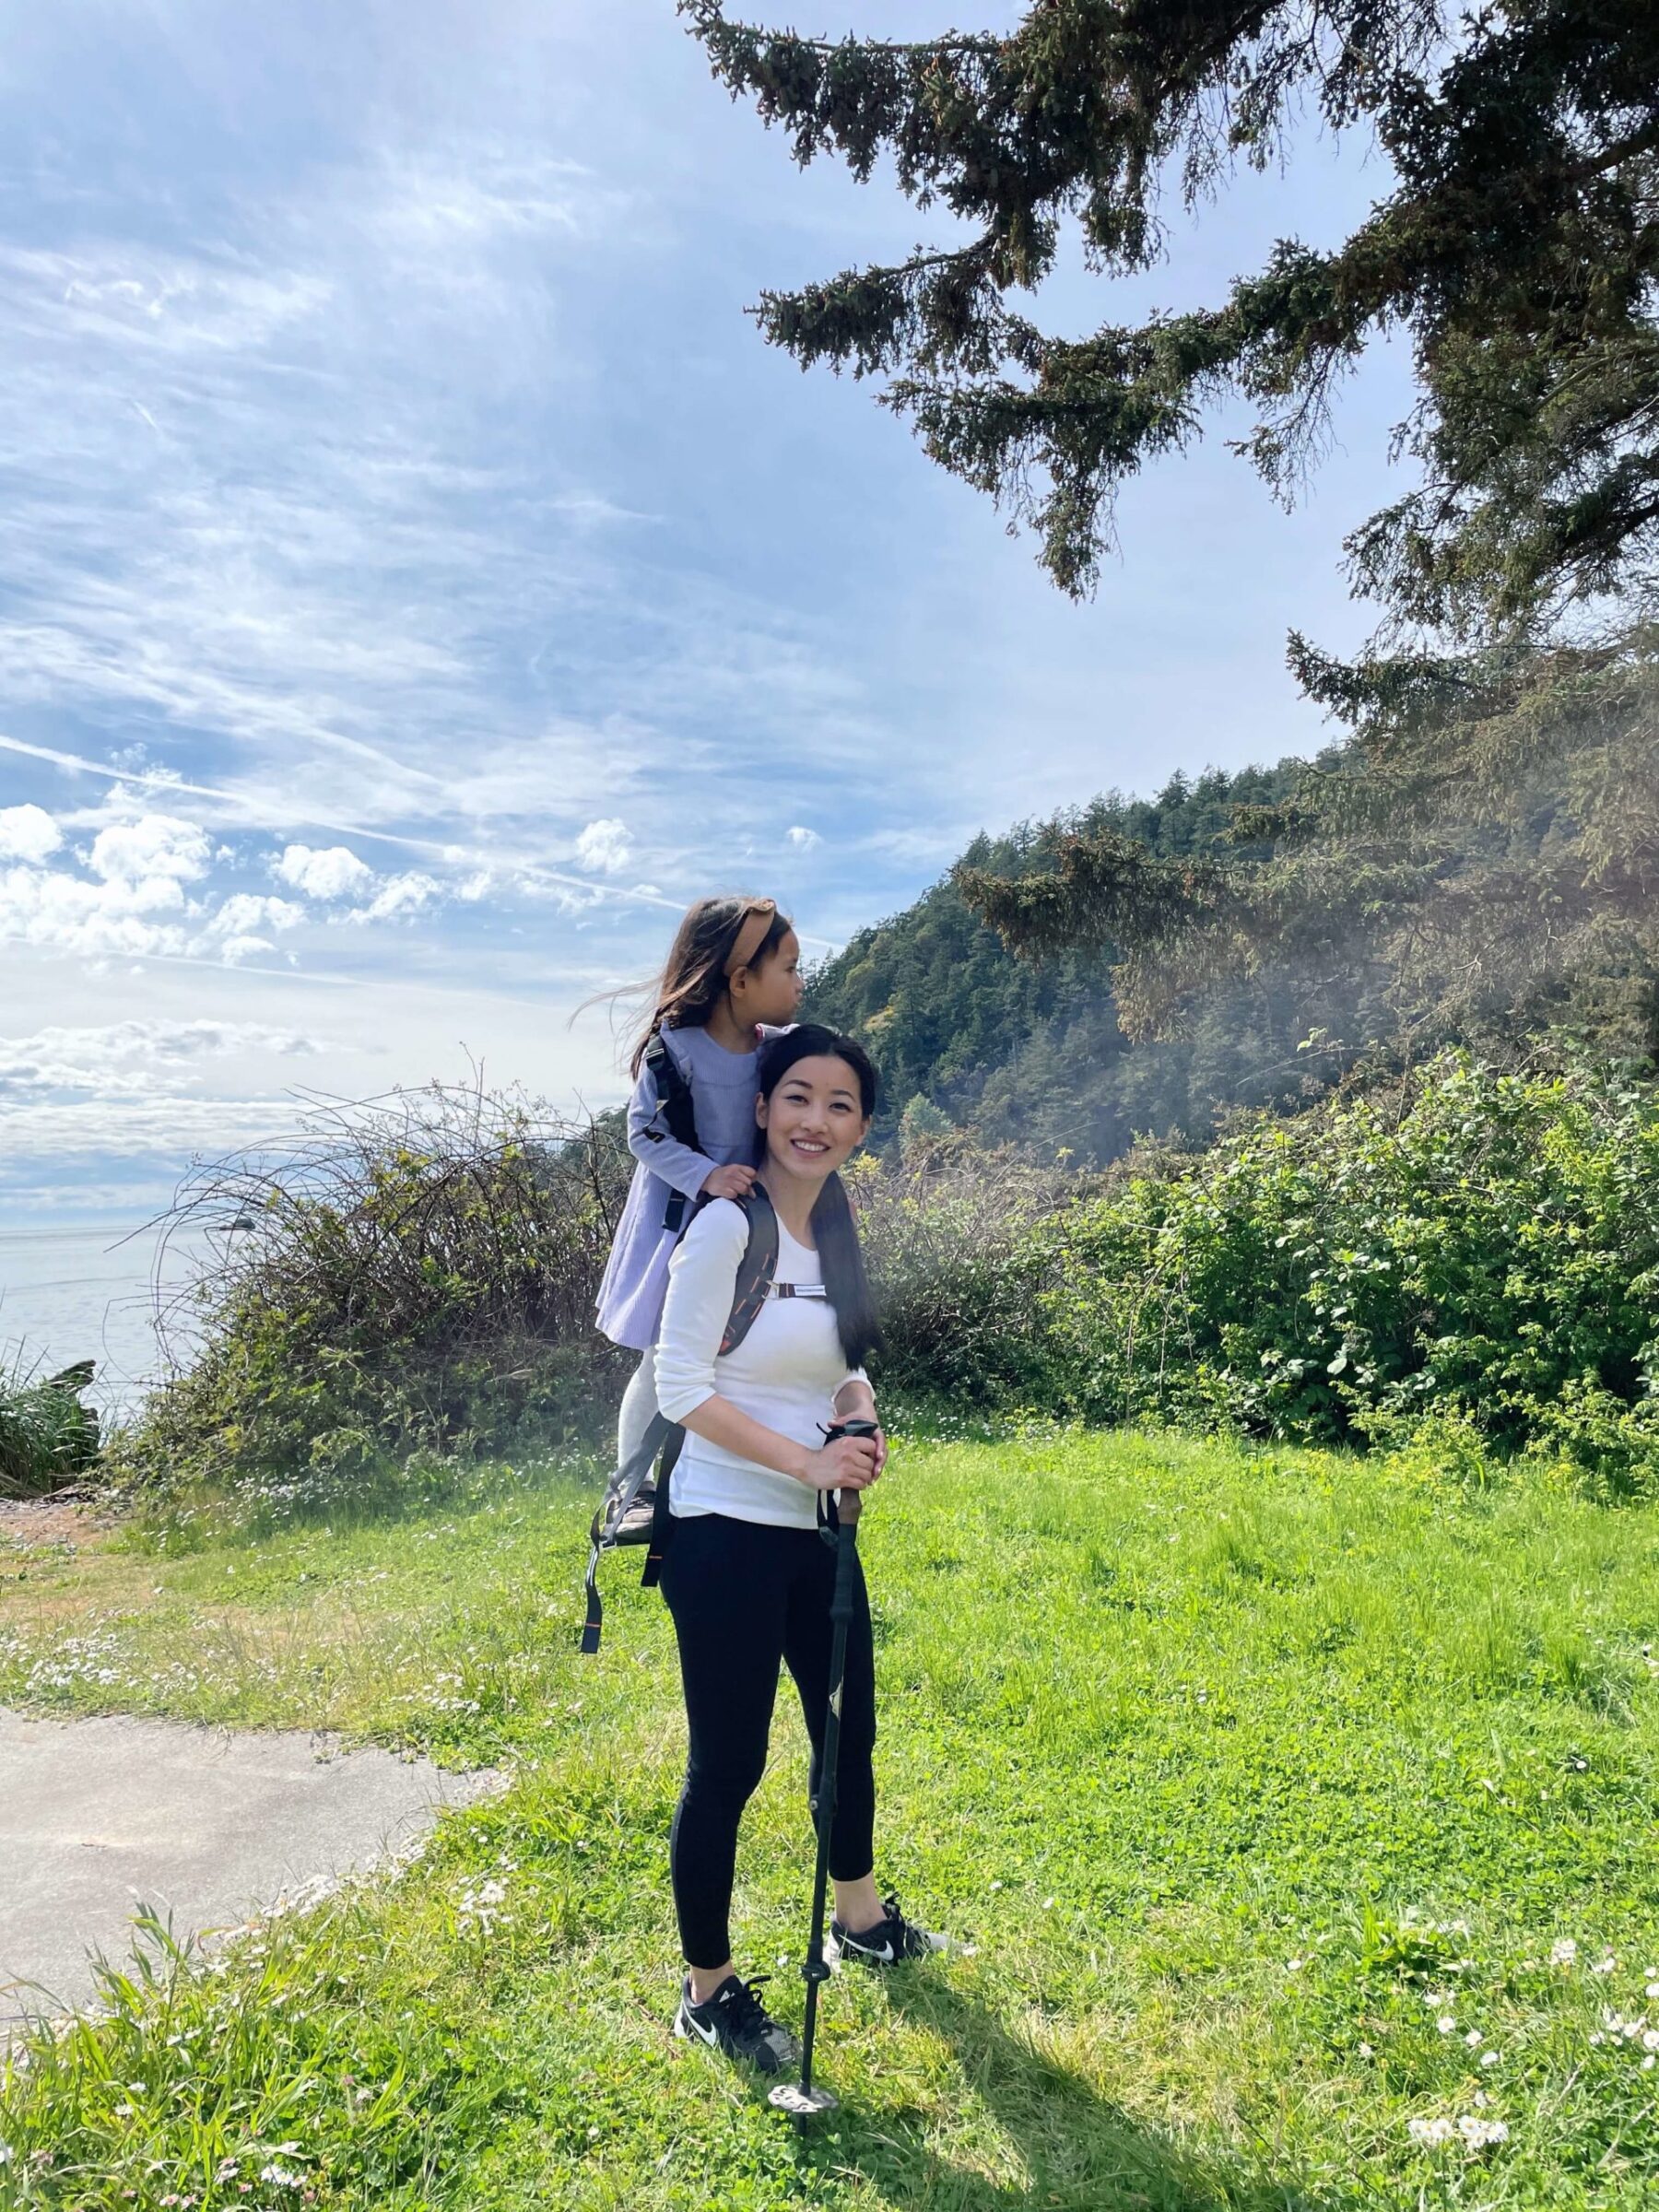 PNW family-friendly hike